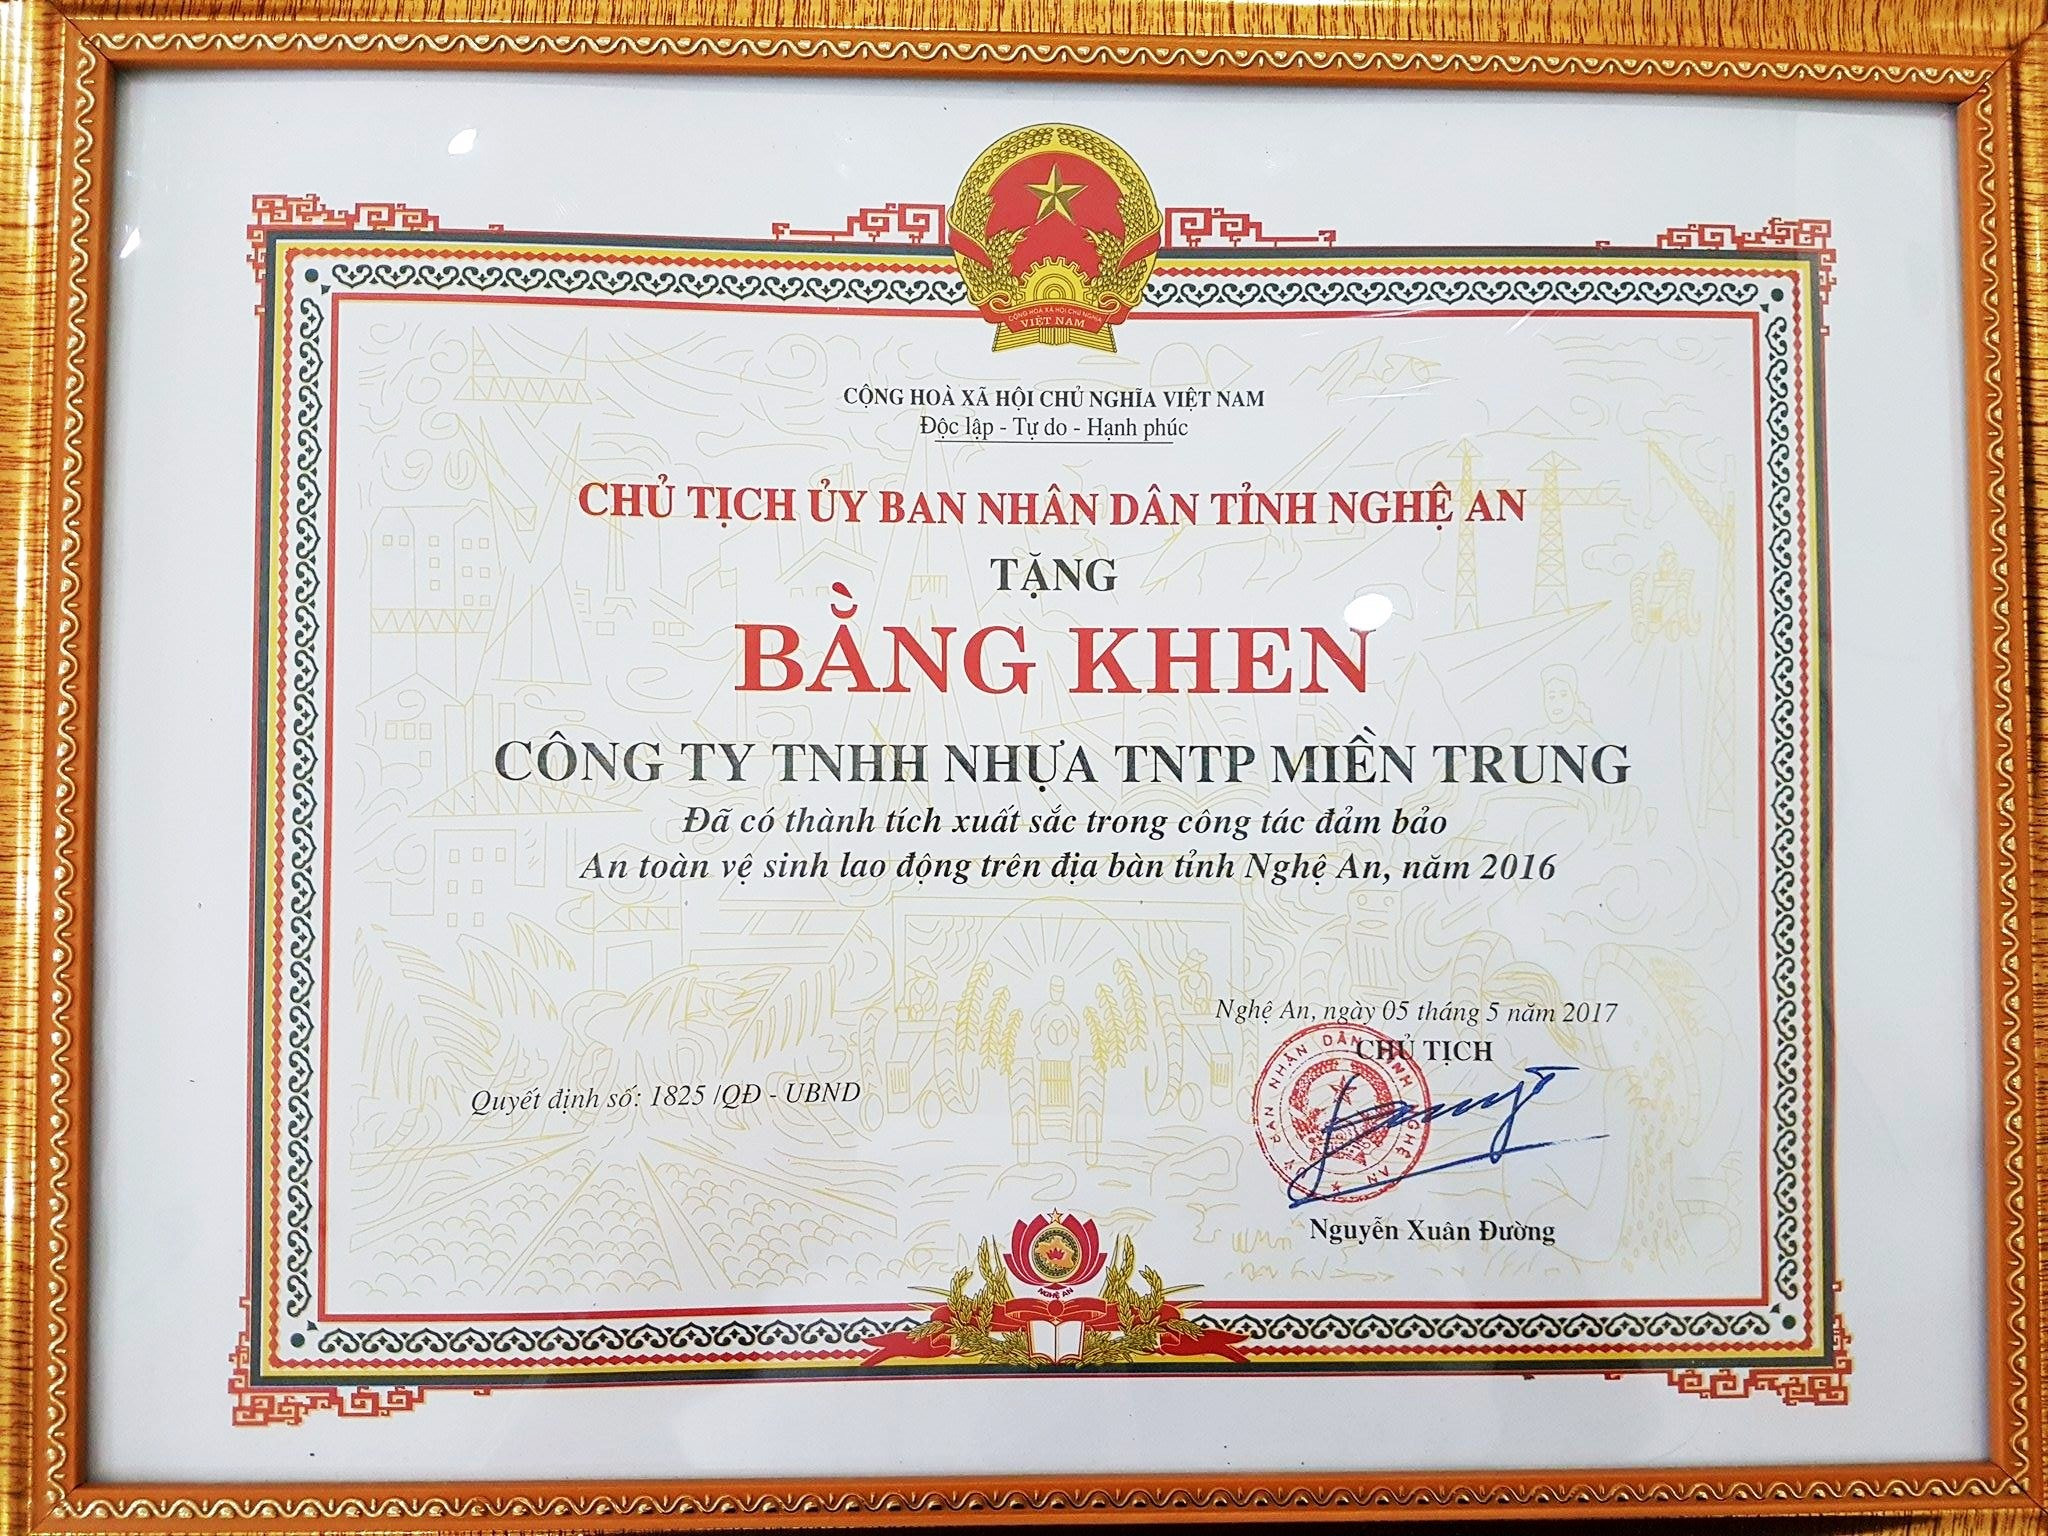 Nhựa Tiền Phong miền trung được tặng bằng khen vì đã có thành tích xuất sắc trong công tác đảm bảo an toàn vệ sinh lao động